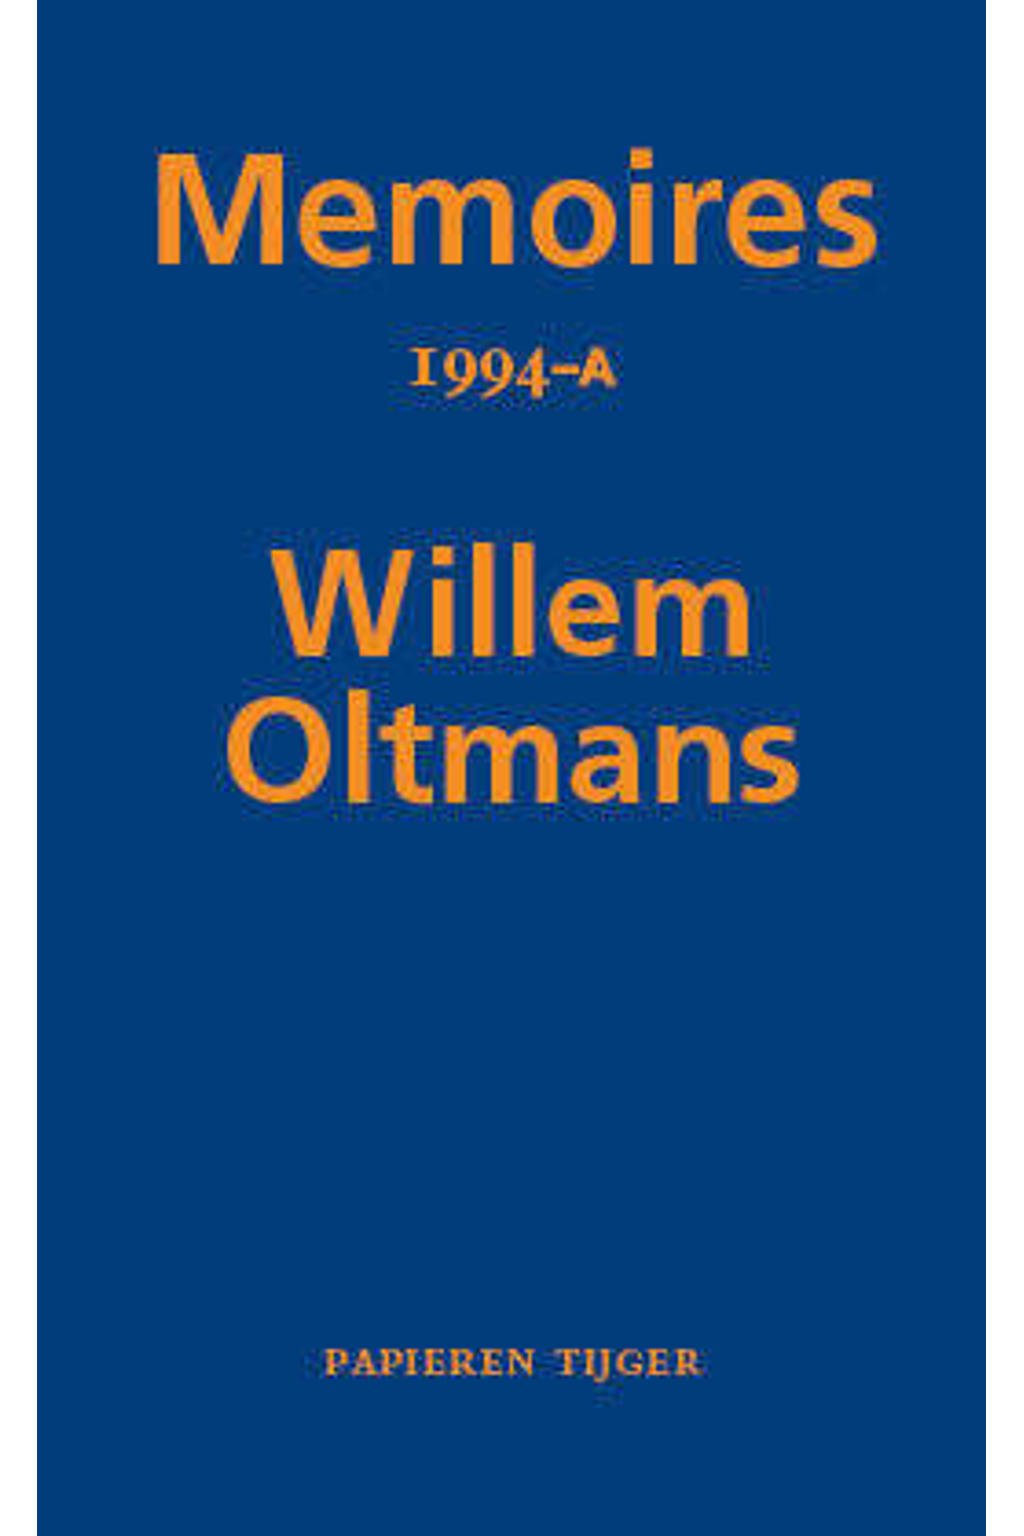 Memoires Willem Oltmans: Memoires 1994-A - Willem Oltmans